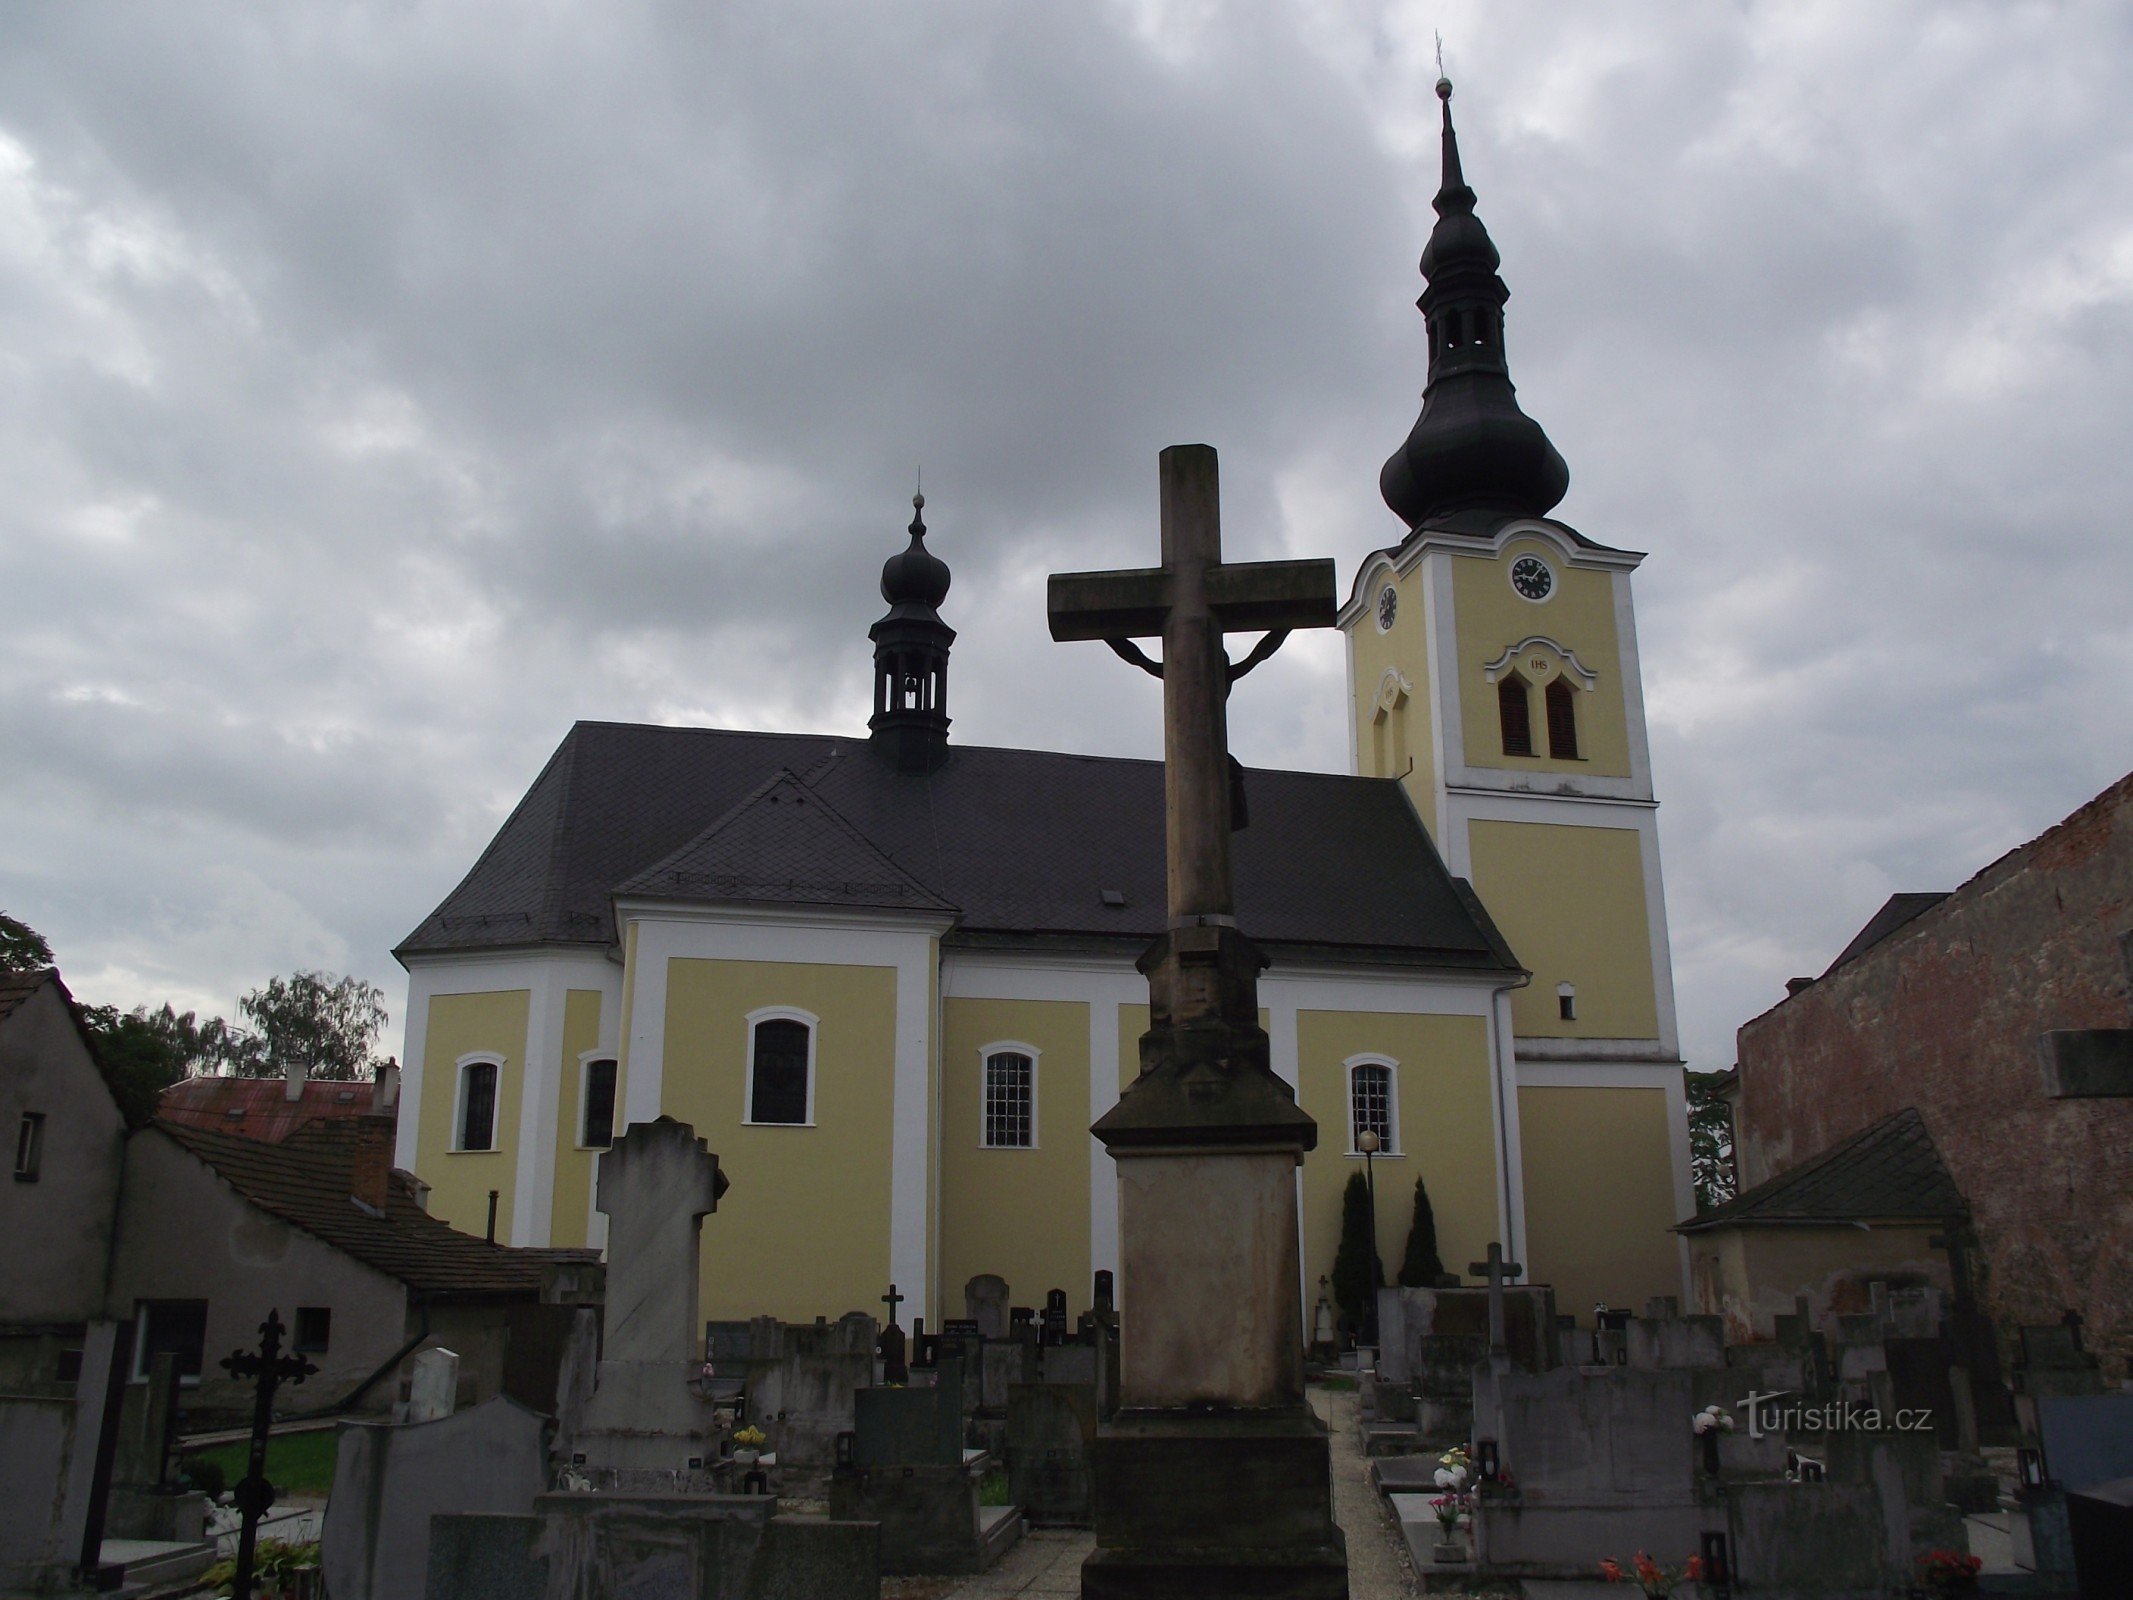 Moravičany - một ngôi làng có nhiều di tích (không chỉ nhỏ)